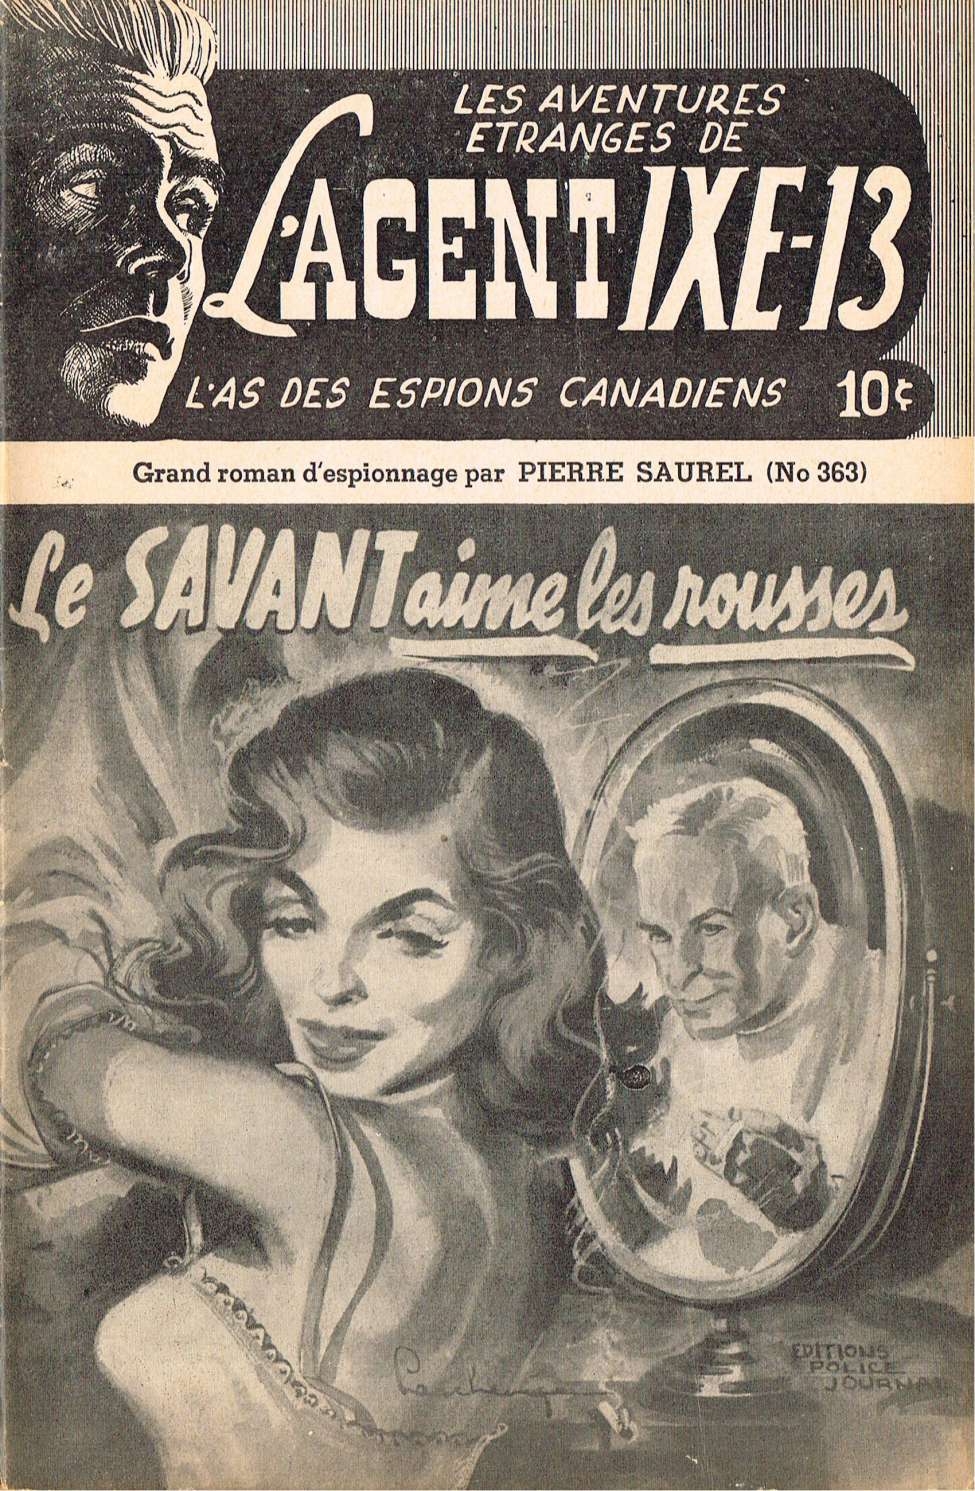 Book Cover For L'Agent IXE-13 v2 363 - Le savant aime les rousses